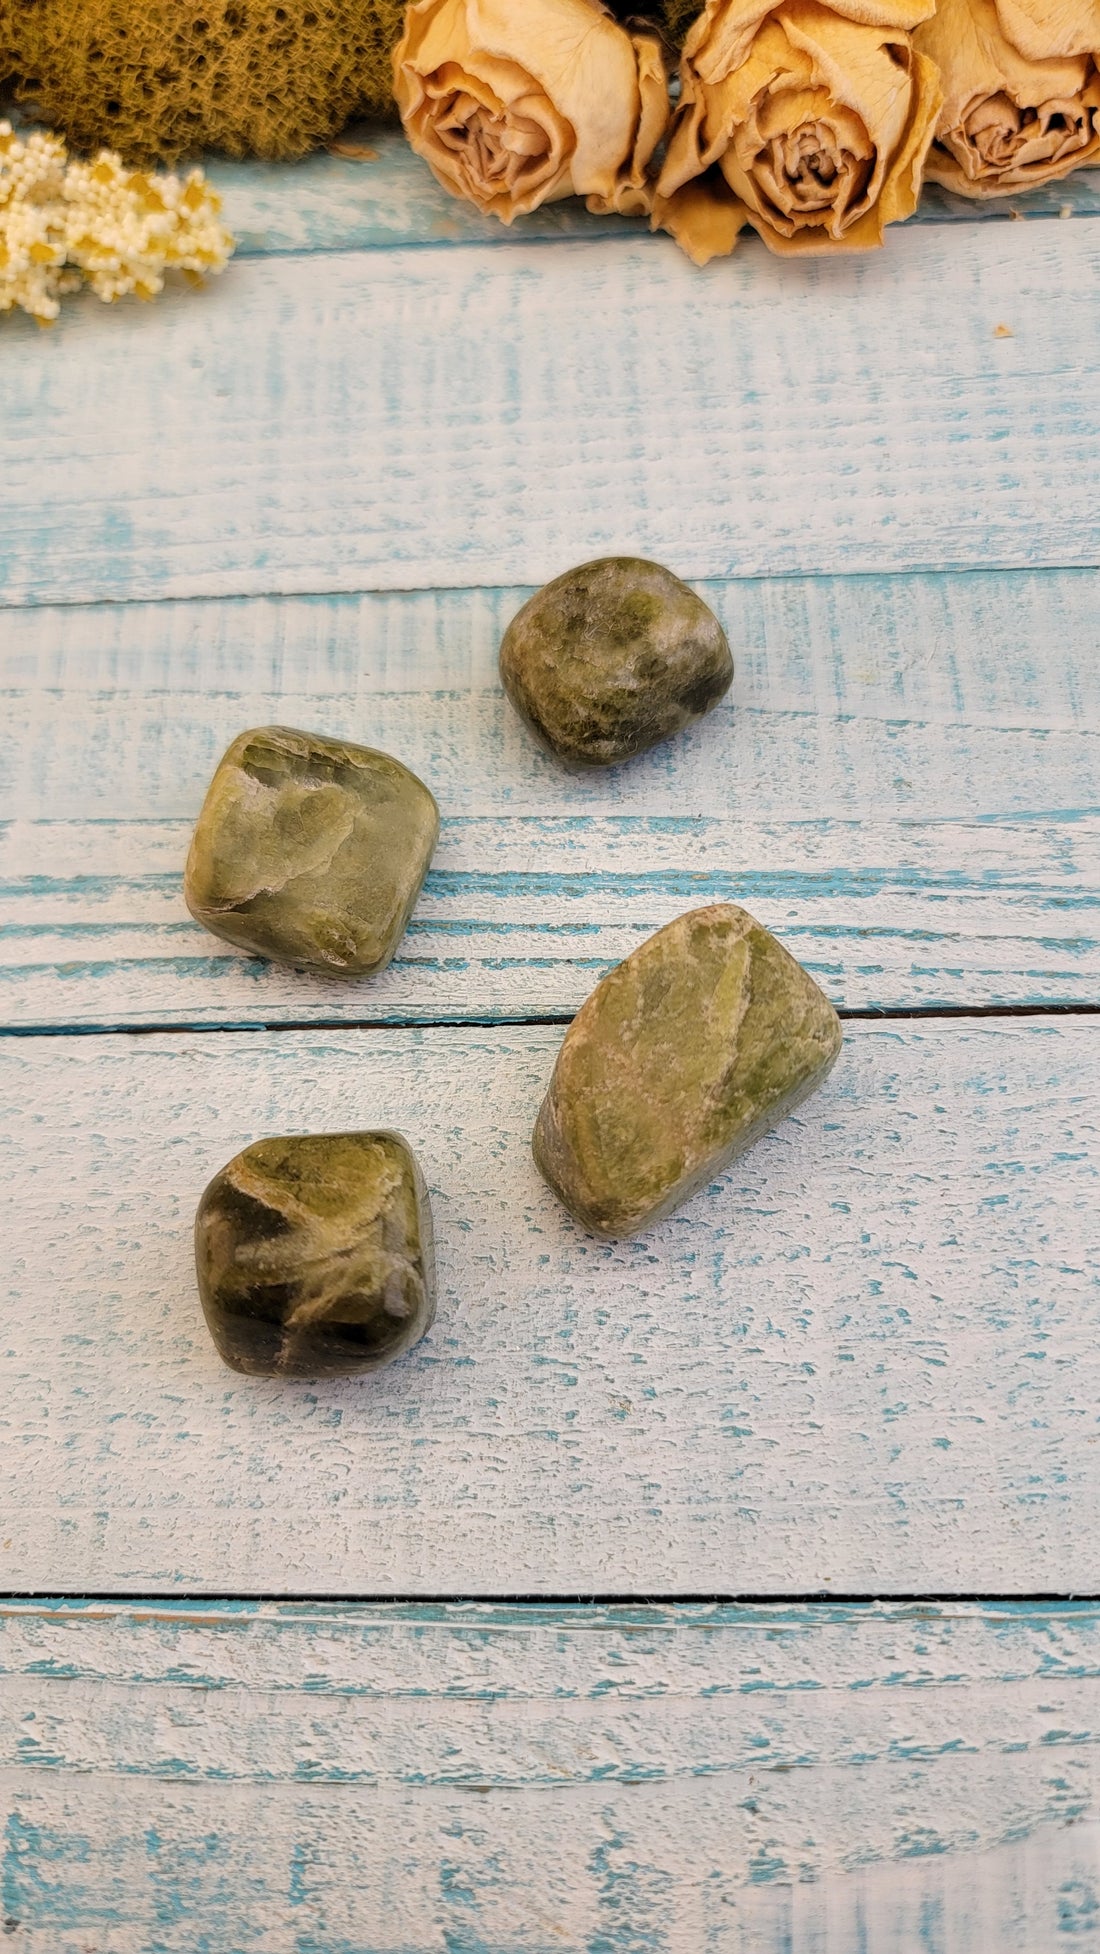 Green Snakeskin Jasper Tumbled - One Stone